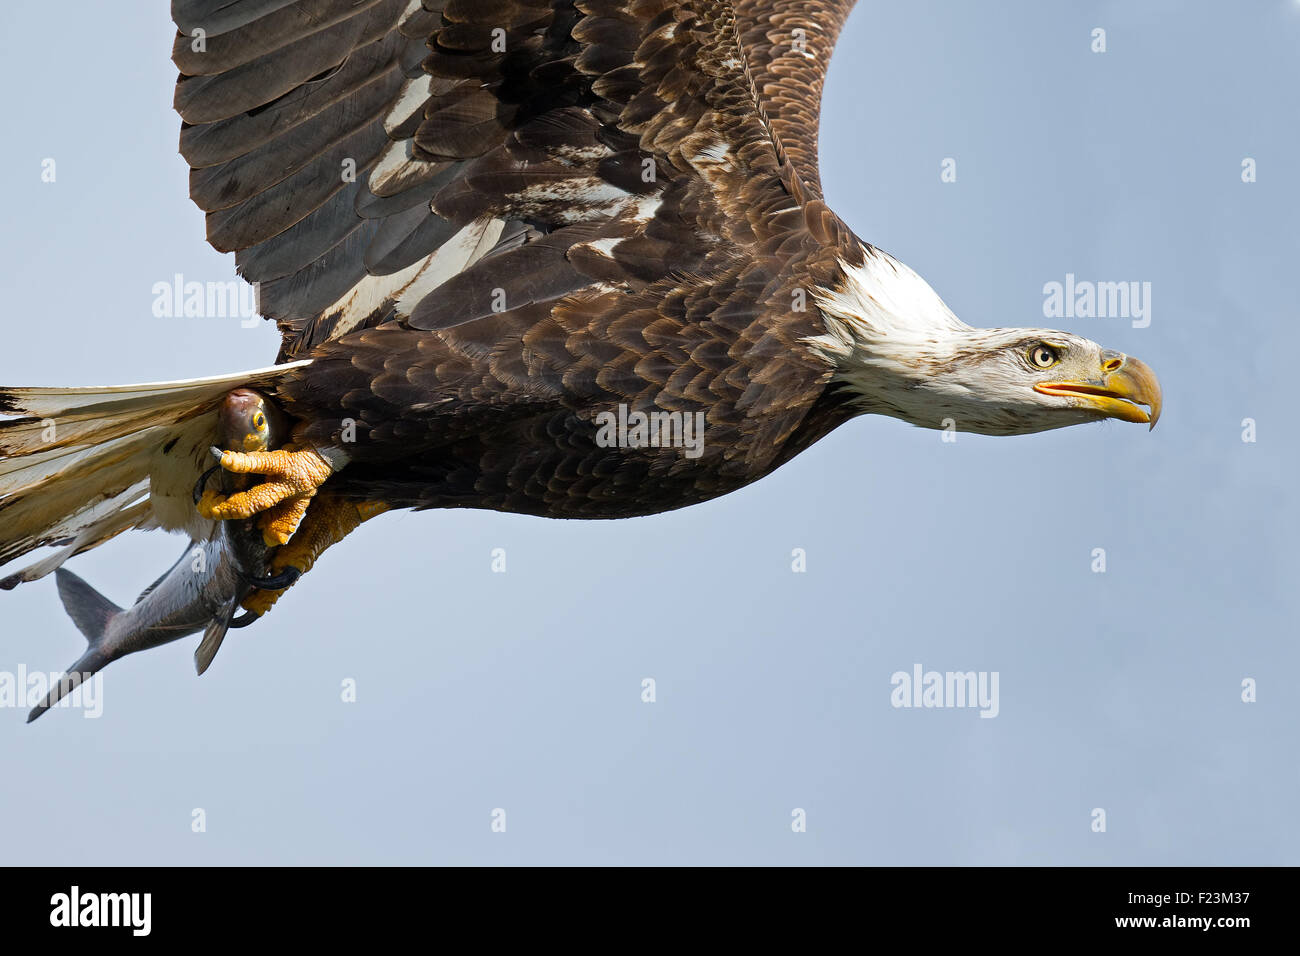 Weißkopfseeadler im Flug mit Fisch in Krallen Stockfotografie - Alamy